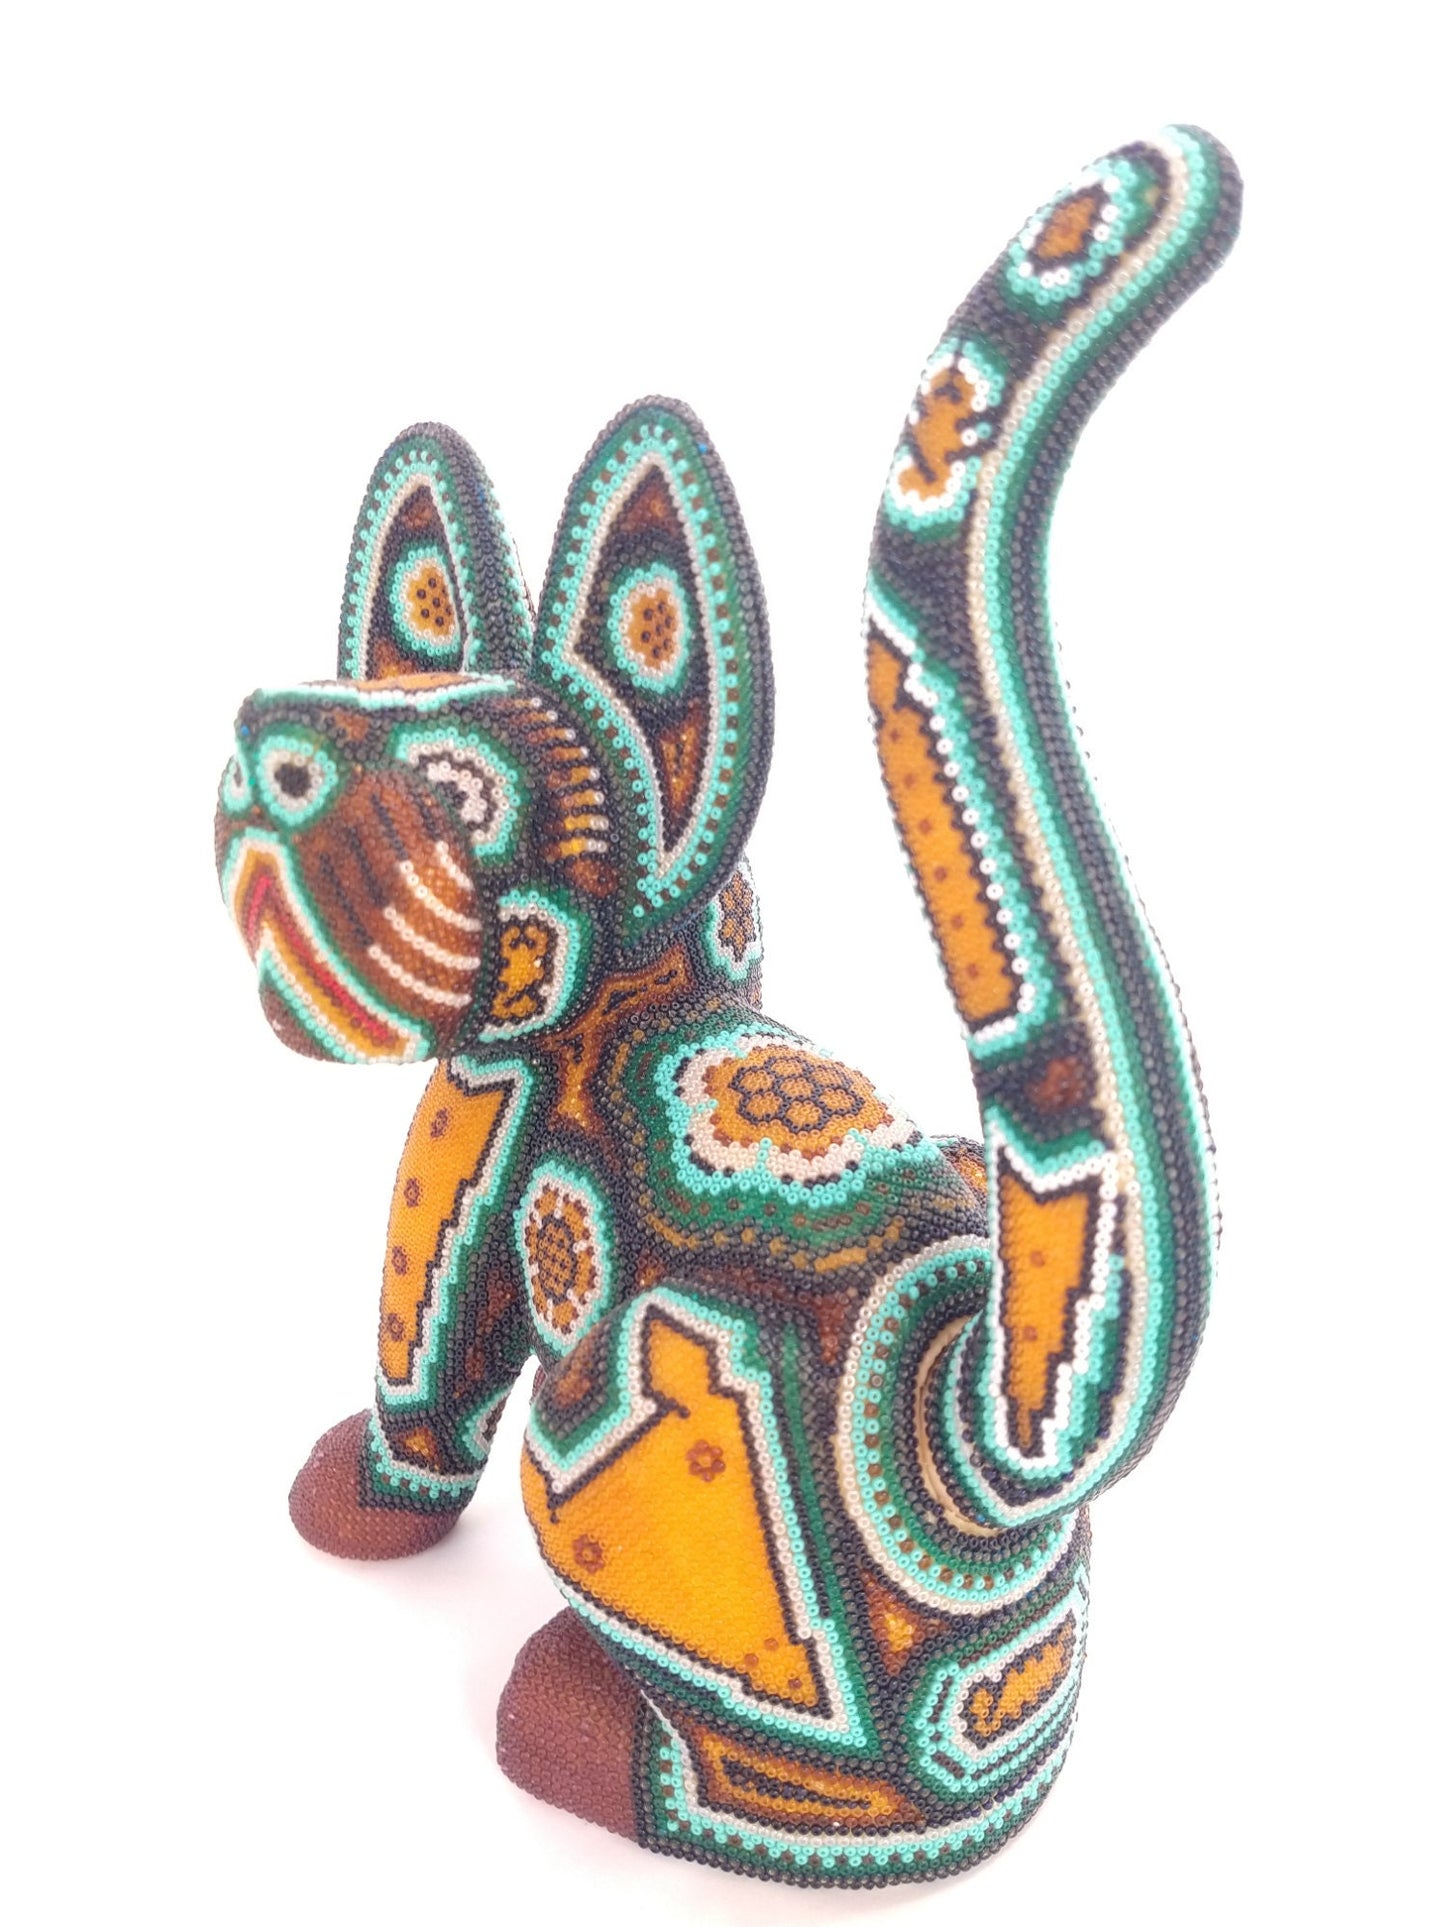 Huichol Beaded Mexican Folk Art Cat By Mayola Villa Lopez PP2963